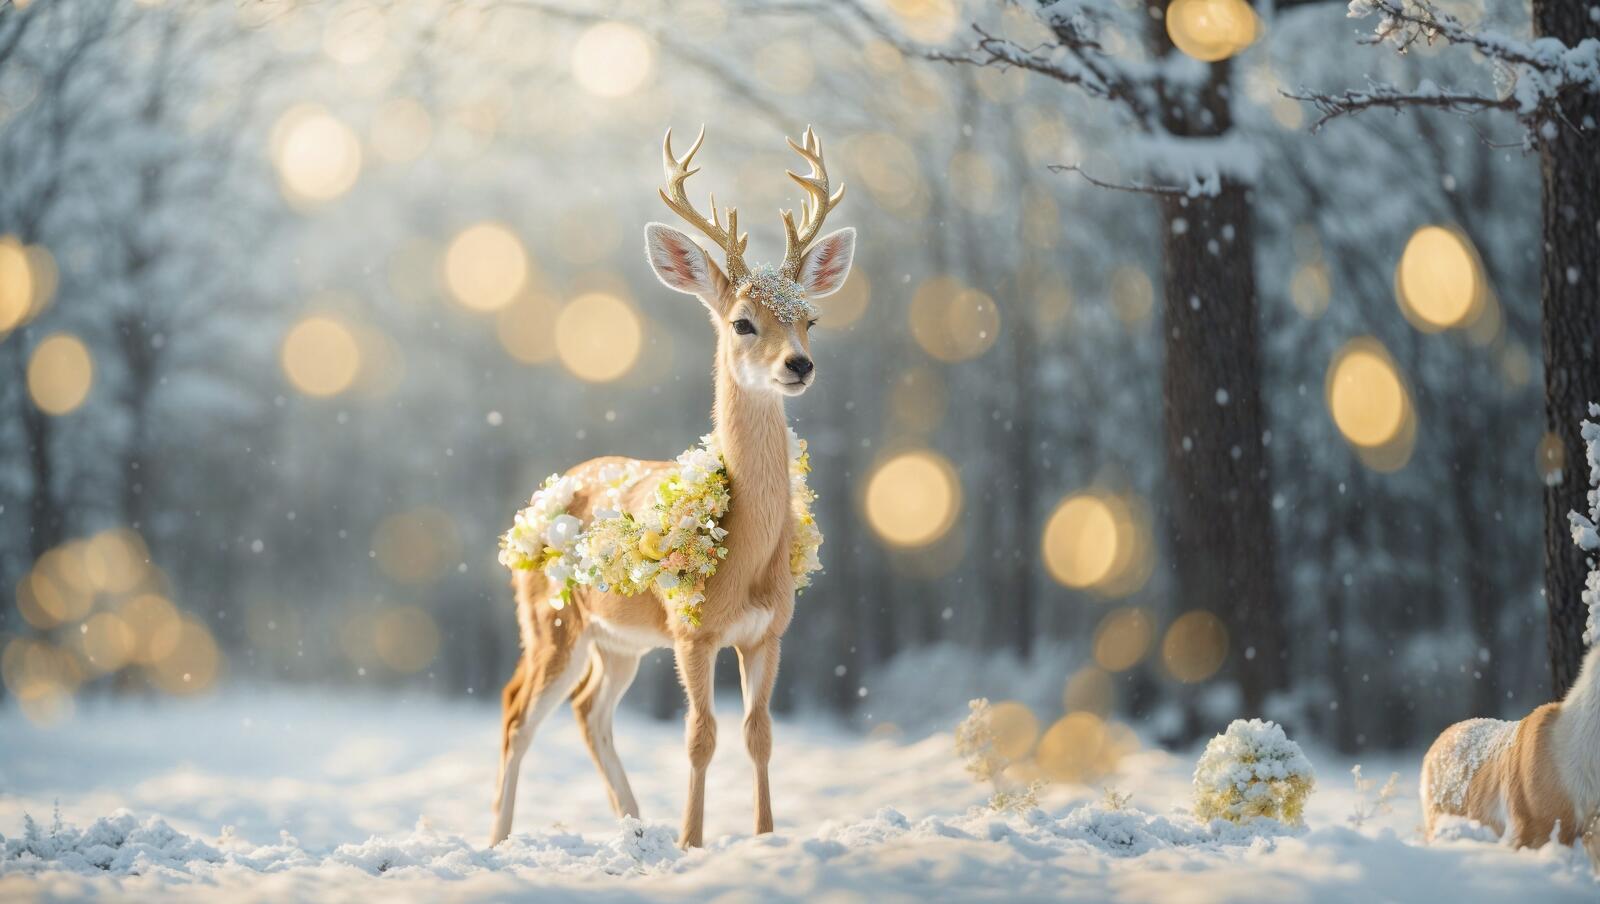 Бесплатное фото Олень на снегу с украшением в виде венка